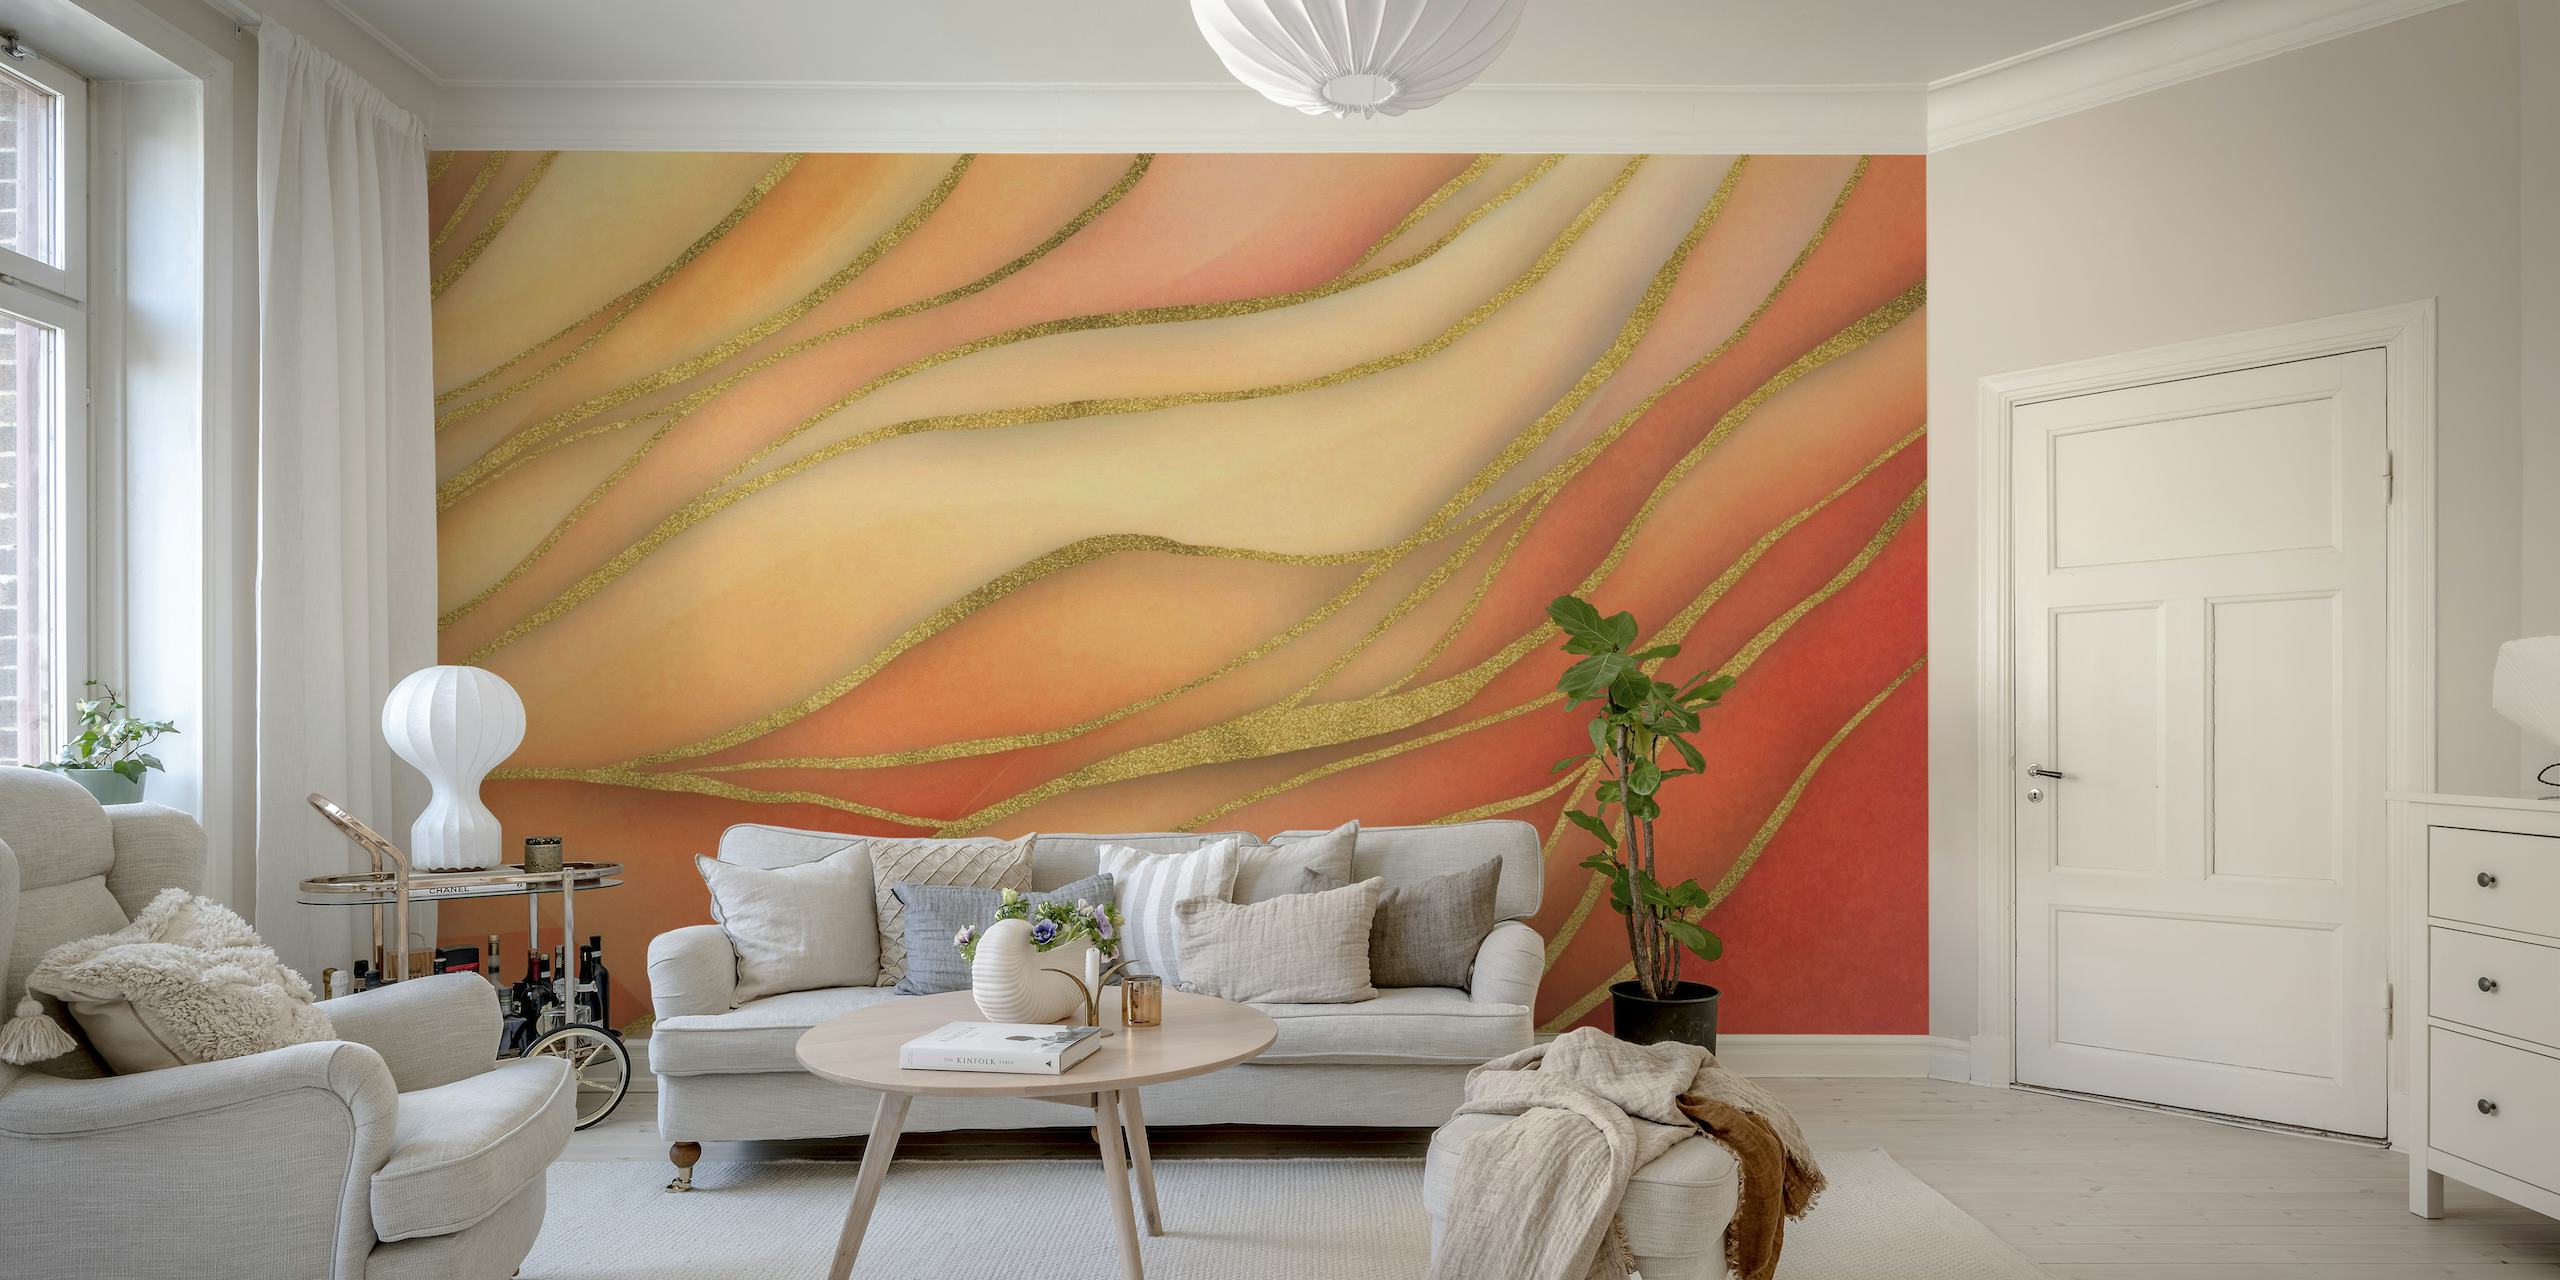 Apstraktni mekani akvarel valovi zidni mural u narančastim i zlatnim tonovima.